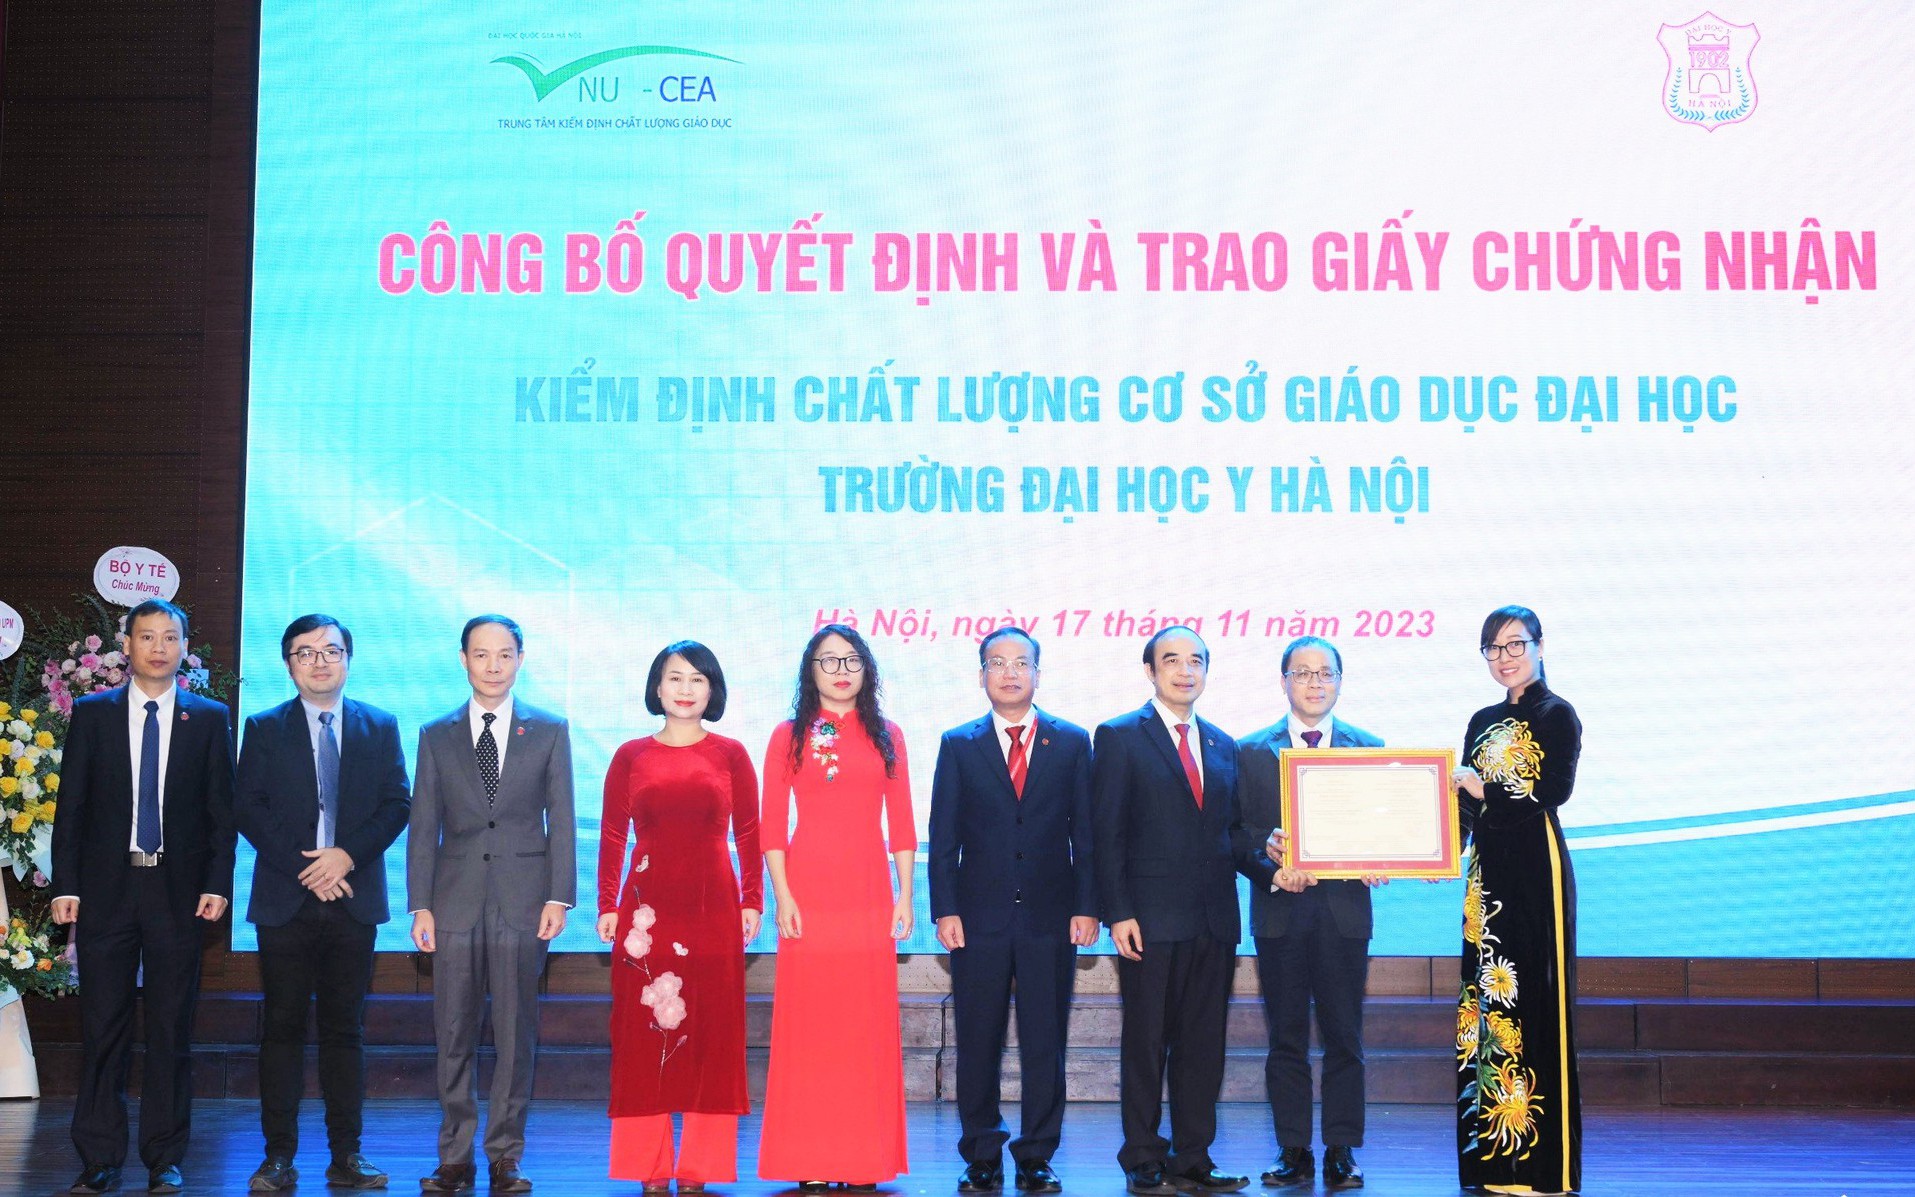 Trường Đại học Y Hà Nội đón nhận Giấy chứng nhận kiểm định chất lượng cơ sở giáo dục đại học